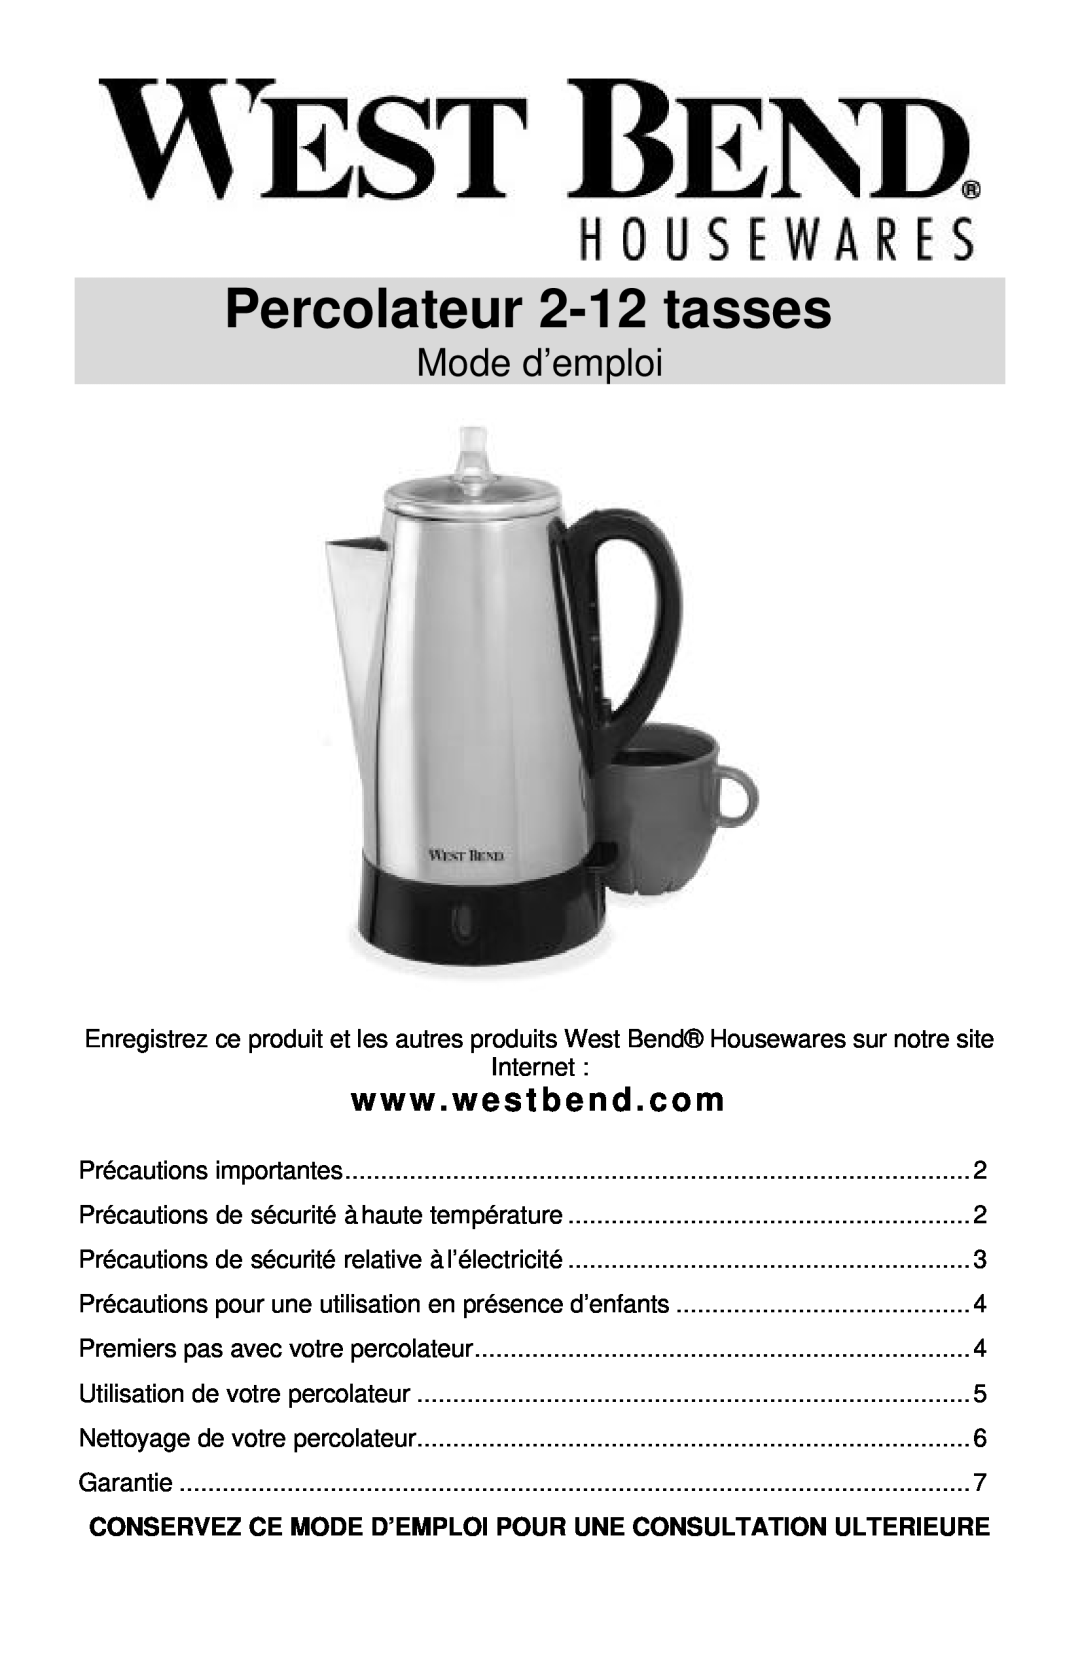 West Bend Coffeemaker Percolateur 2-12 tasses, Mode d’emploi, Conservez Ce Mode D’Emploi Pour Une Consultation Ulterieure 